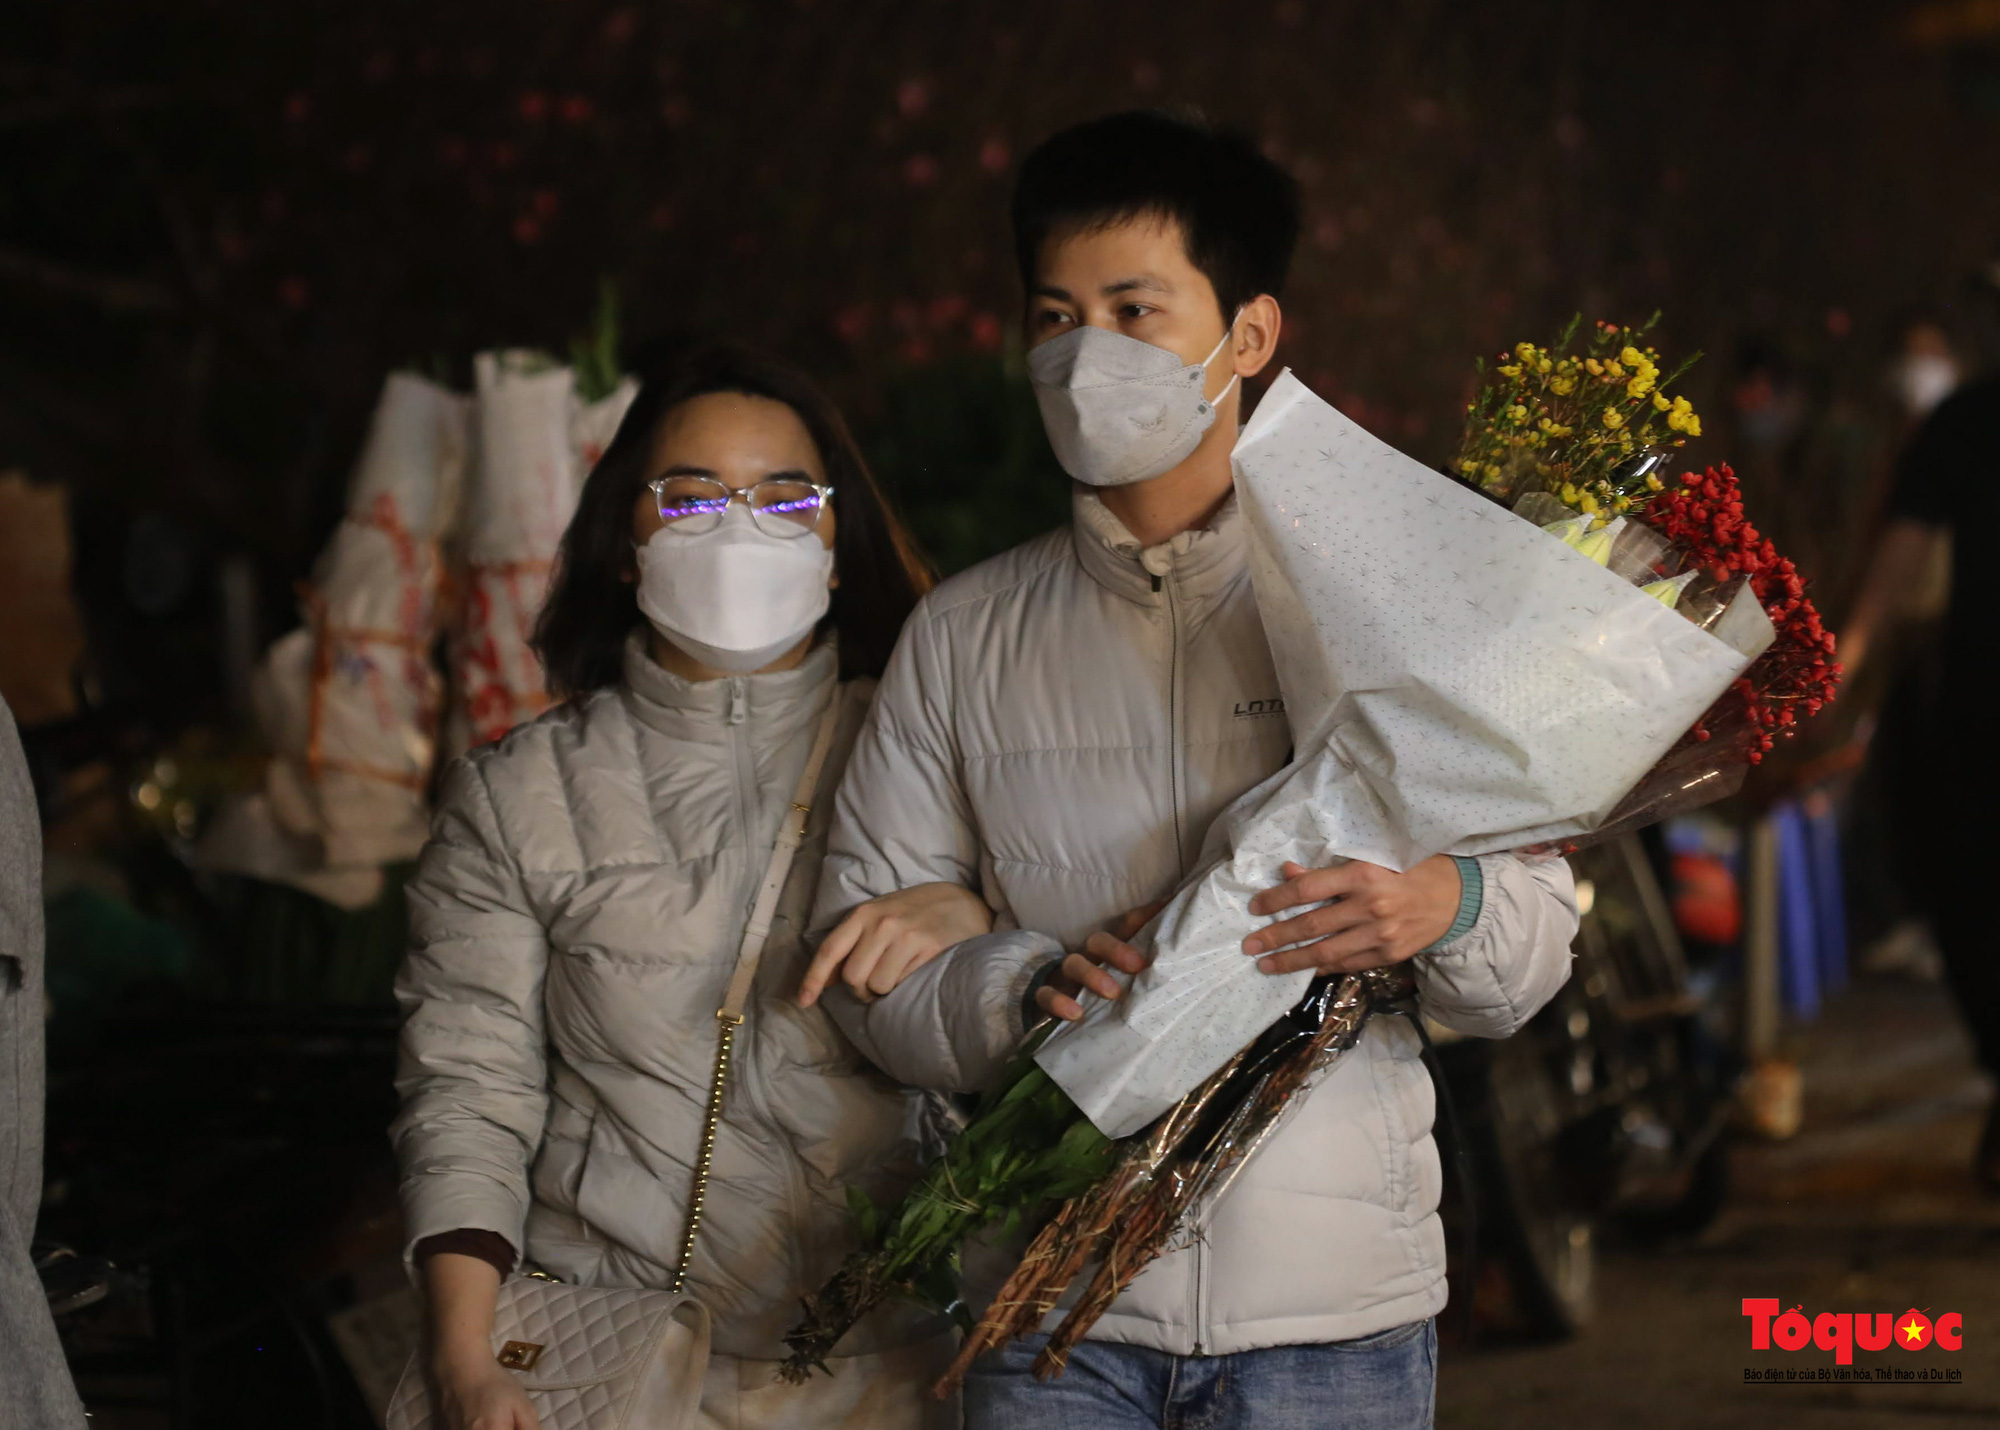 Chợ hoa đêm lớn nhất Hà Nội rộn ràng ngày cận Tết - Ảnh 16.